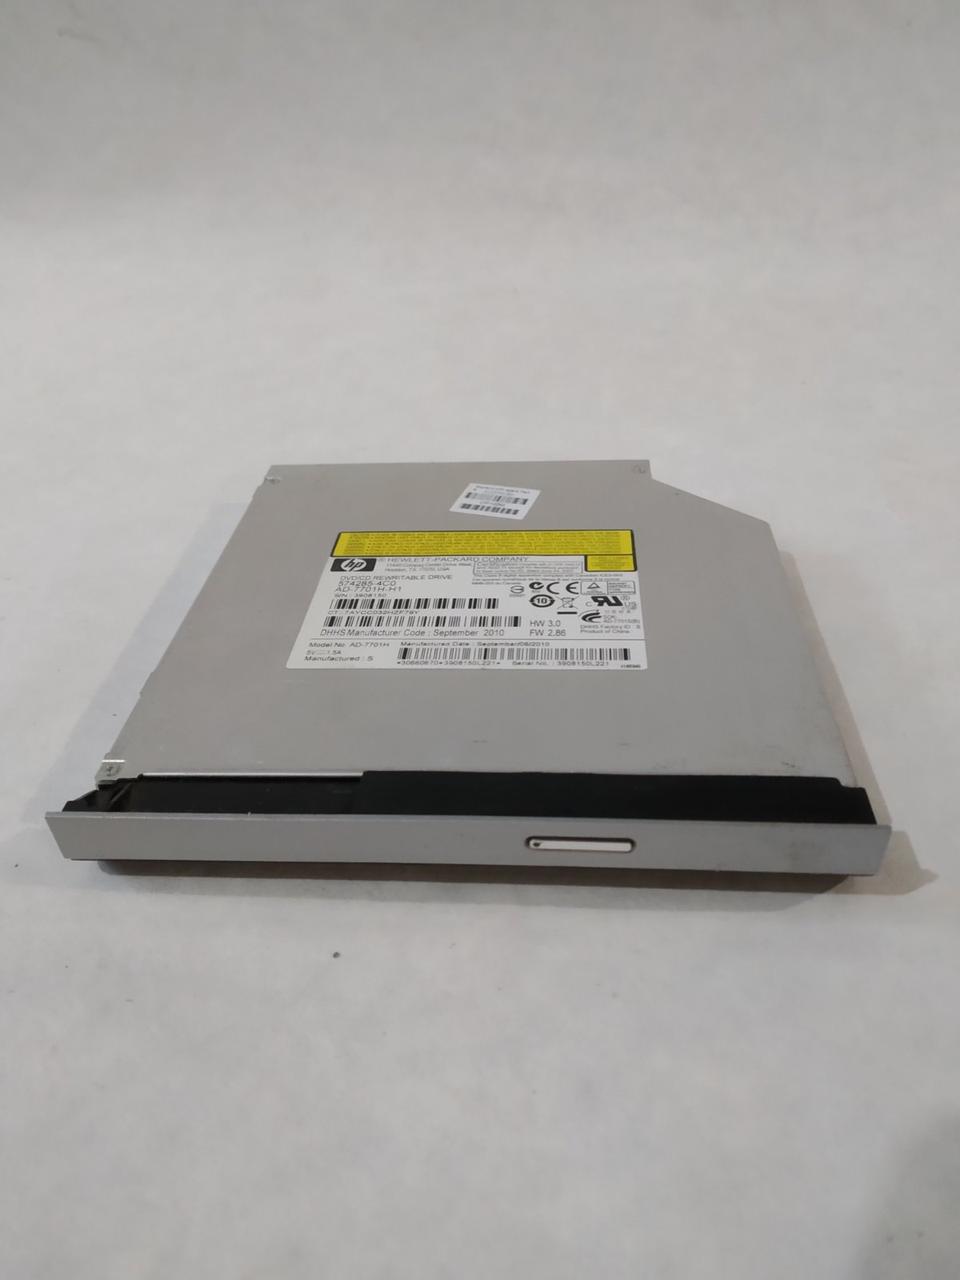 Привод DVD-RW дисковод Sata AD-7701H-H1